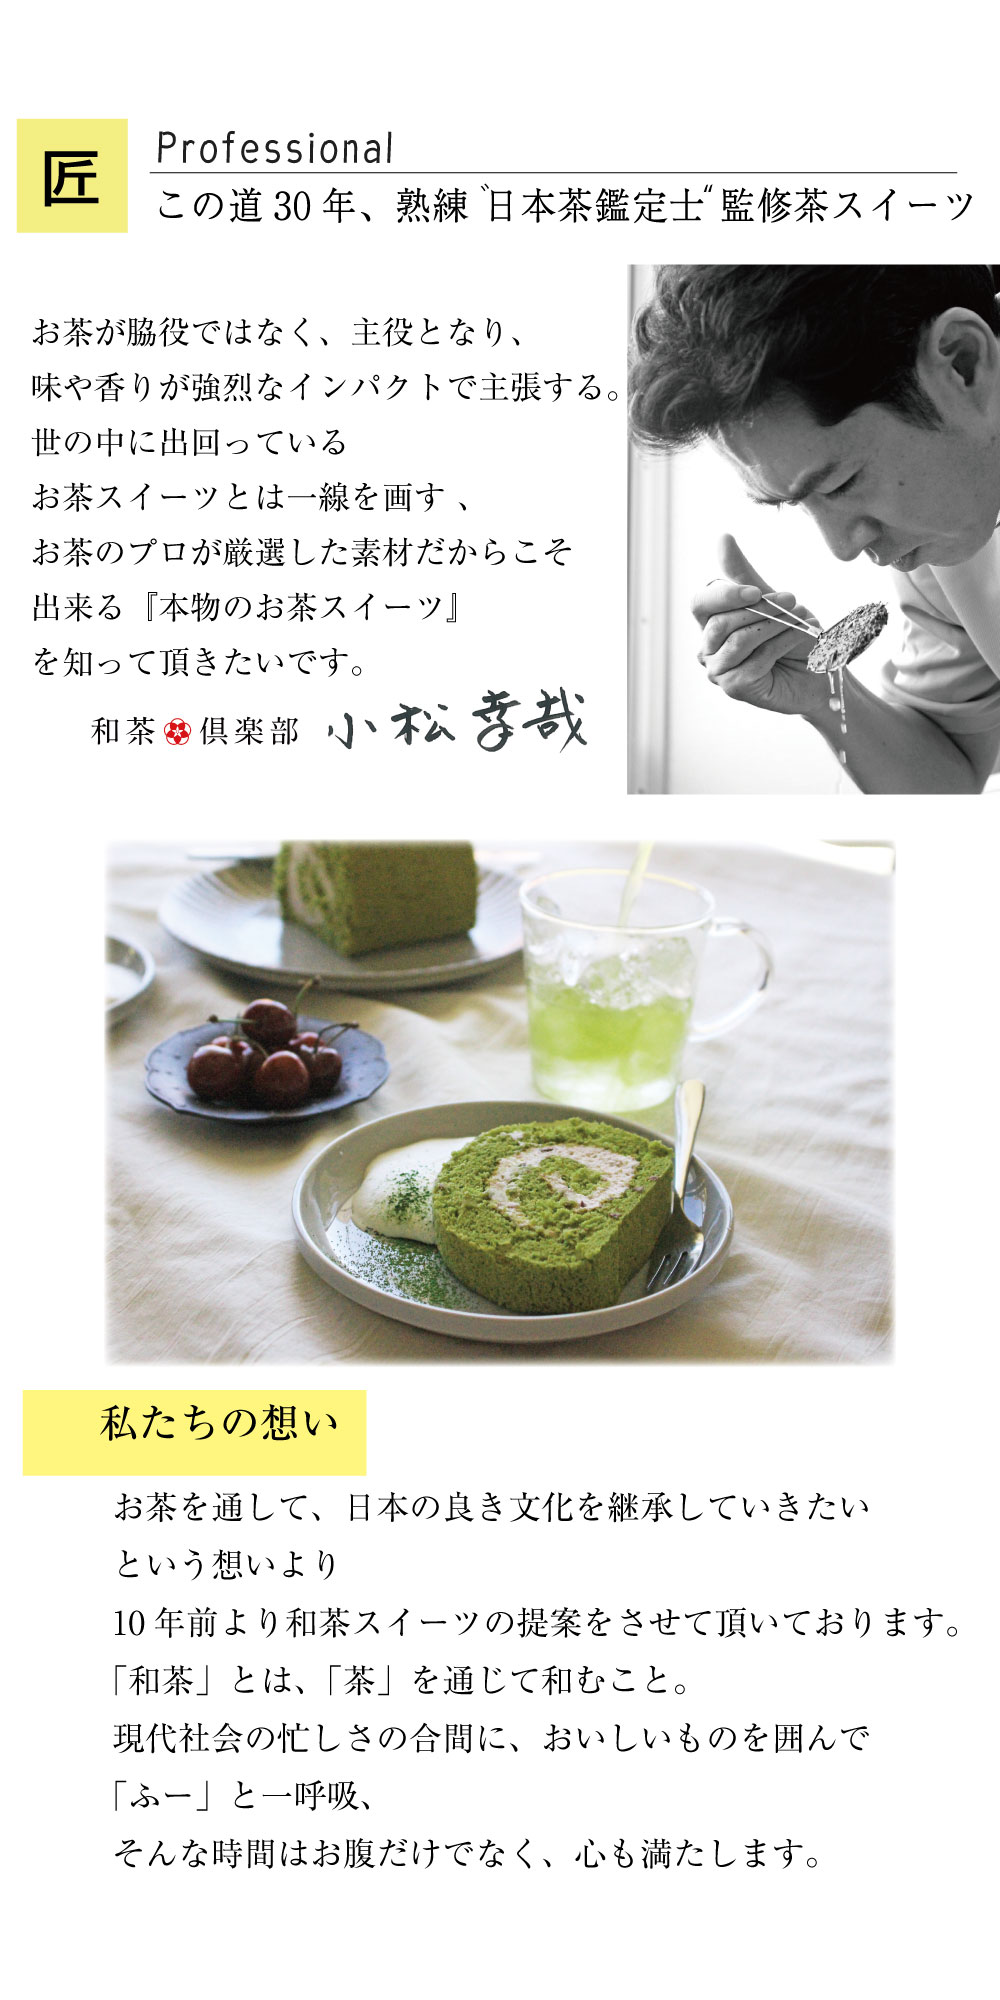 茶の道一筋30年の熟練日本茶鑑定士が監修した自慢のスイーツ。お茶が脇役でなく主役となるような、「本物のお茶スイーツ」を知っていただきたいです。